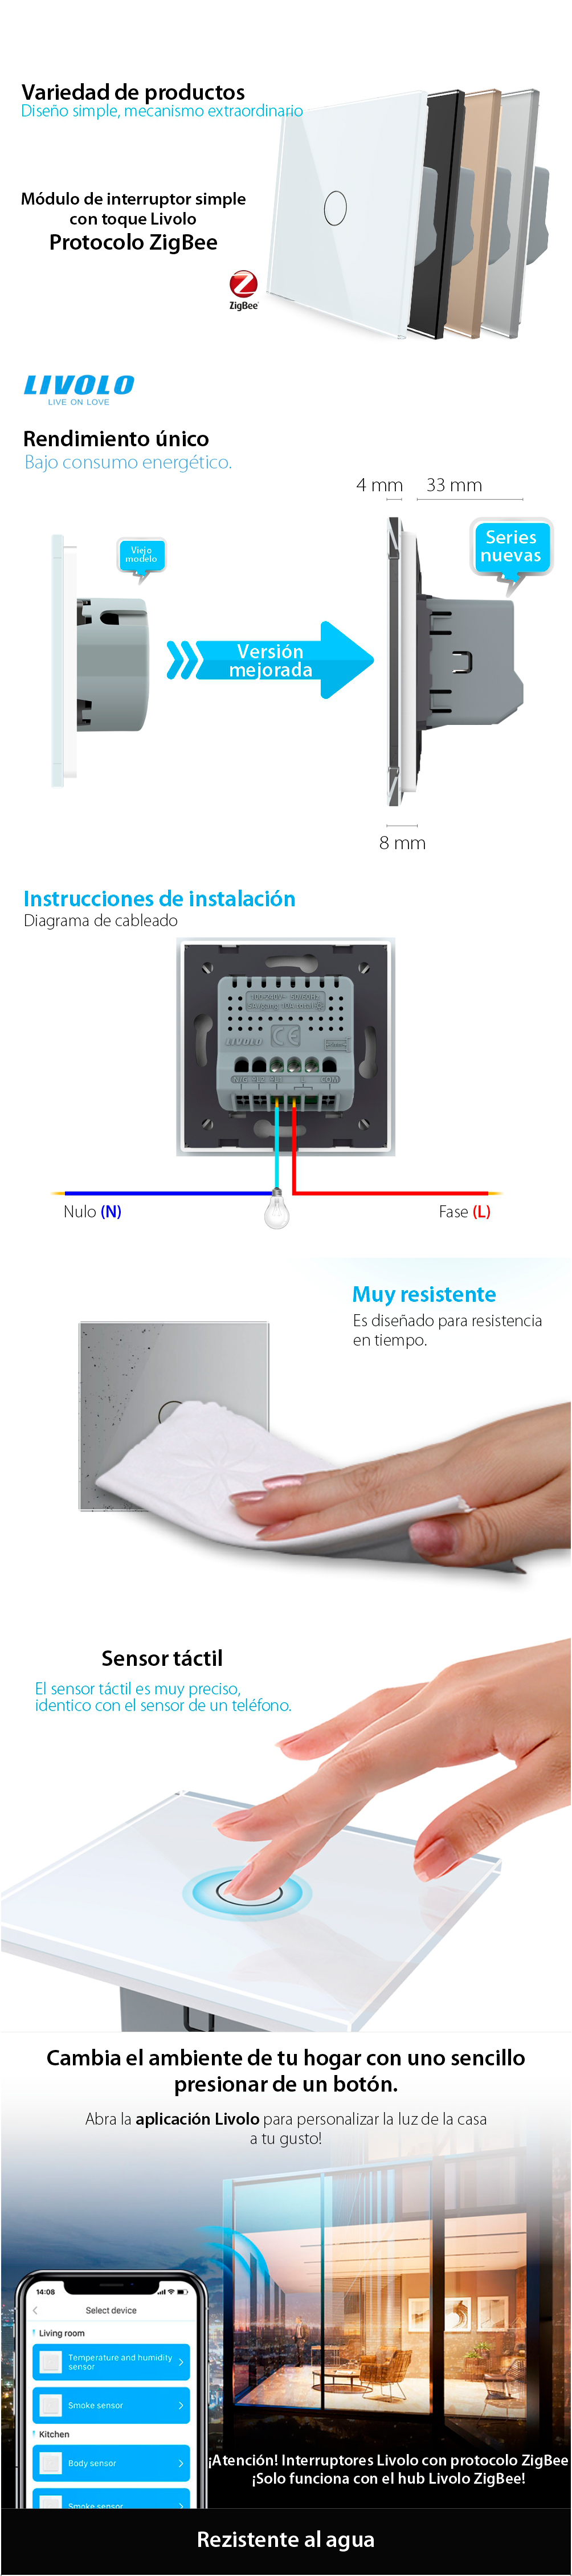 Interruptor táctil simple Livolo de vidrio – protocolo ZigBee, control desde el teléfono móvil